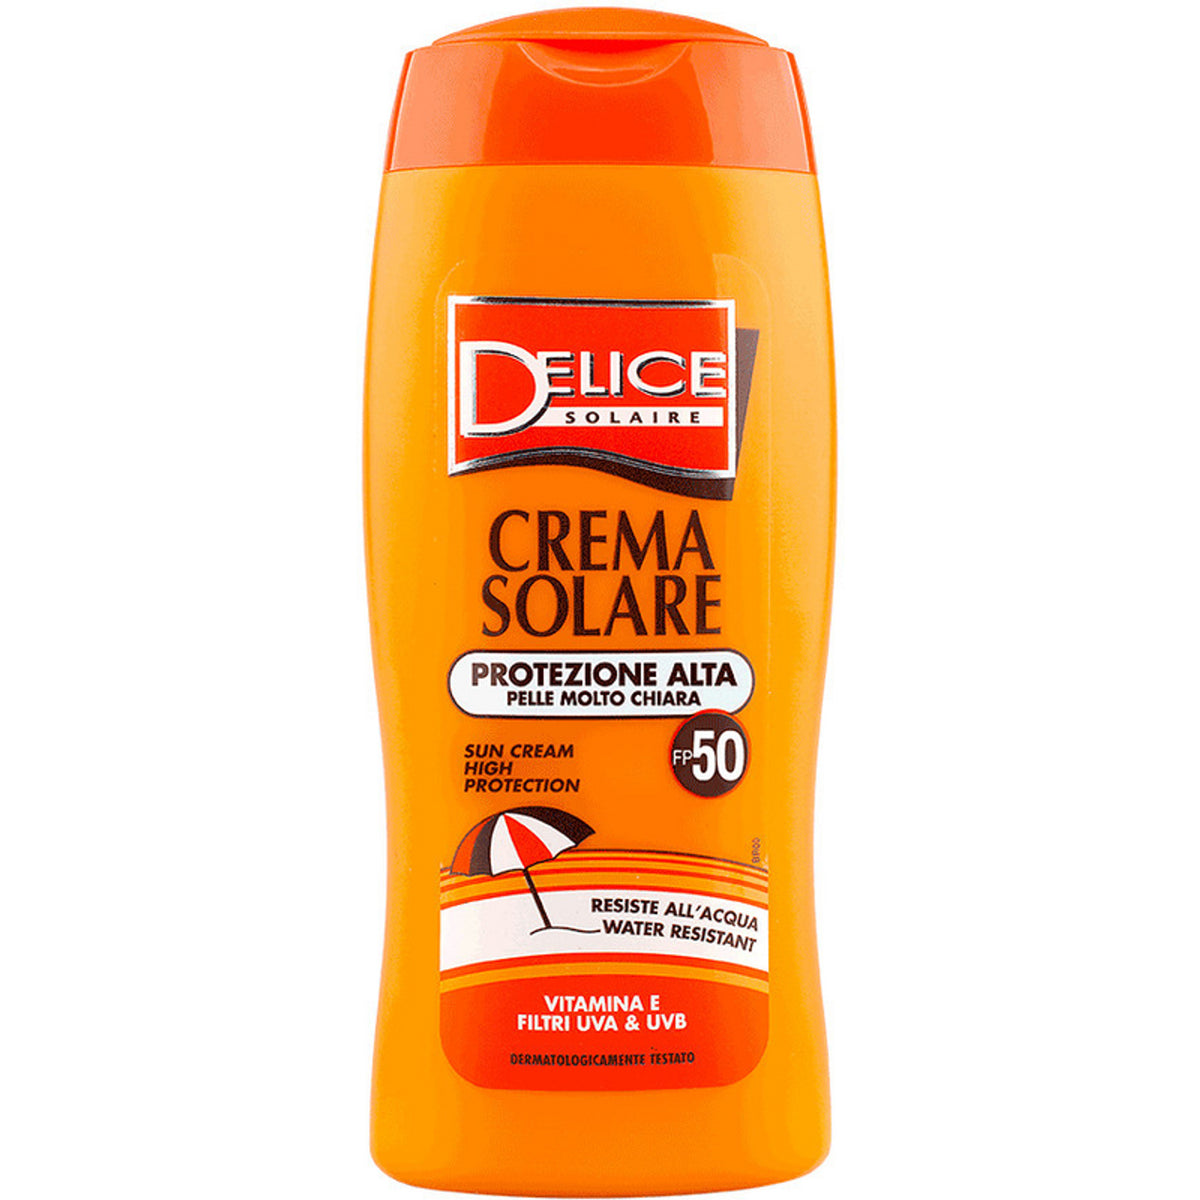 „Delice Solaire Solar Cream SPF 50 250 ml“